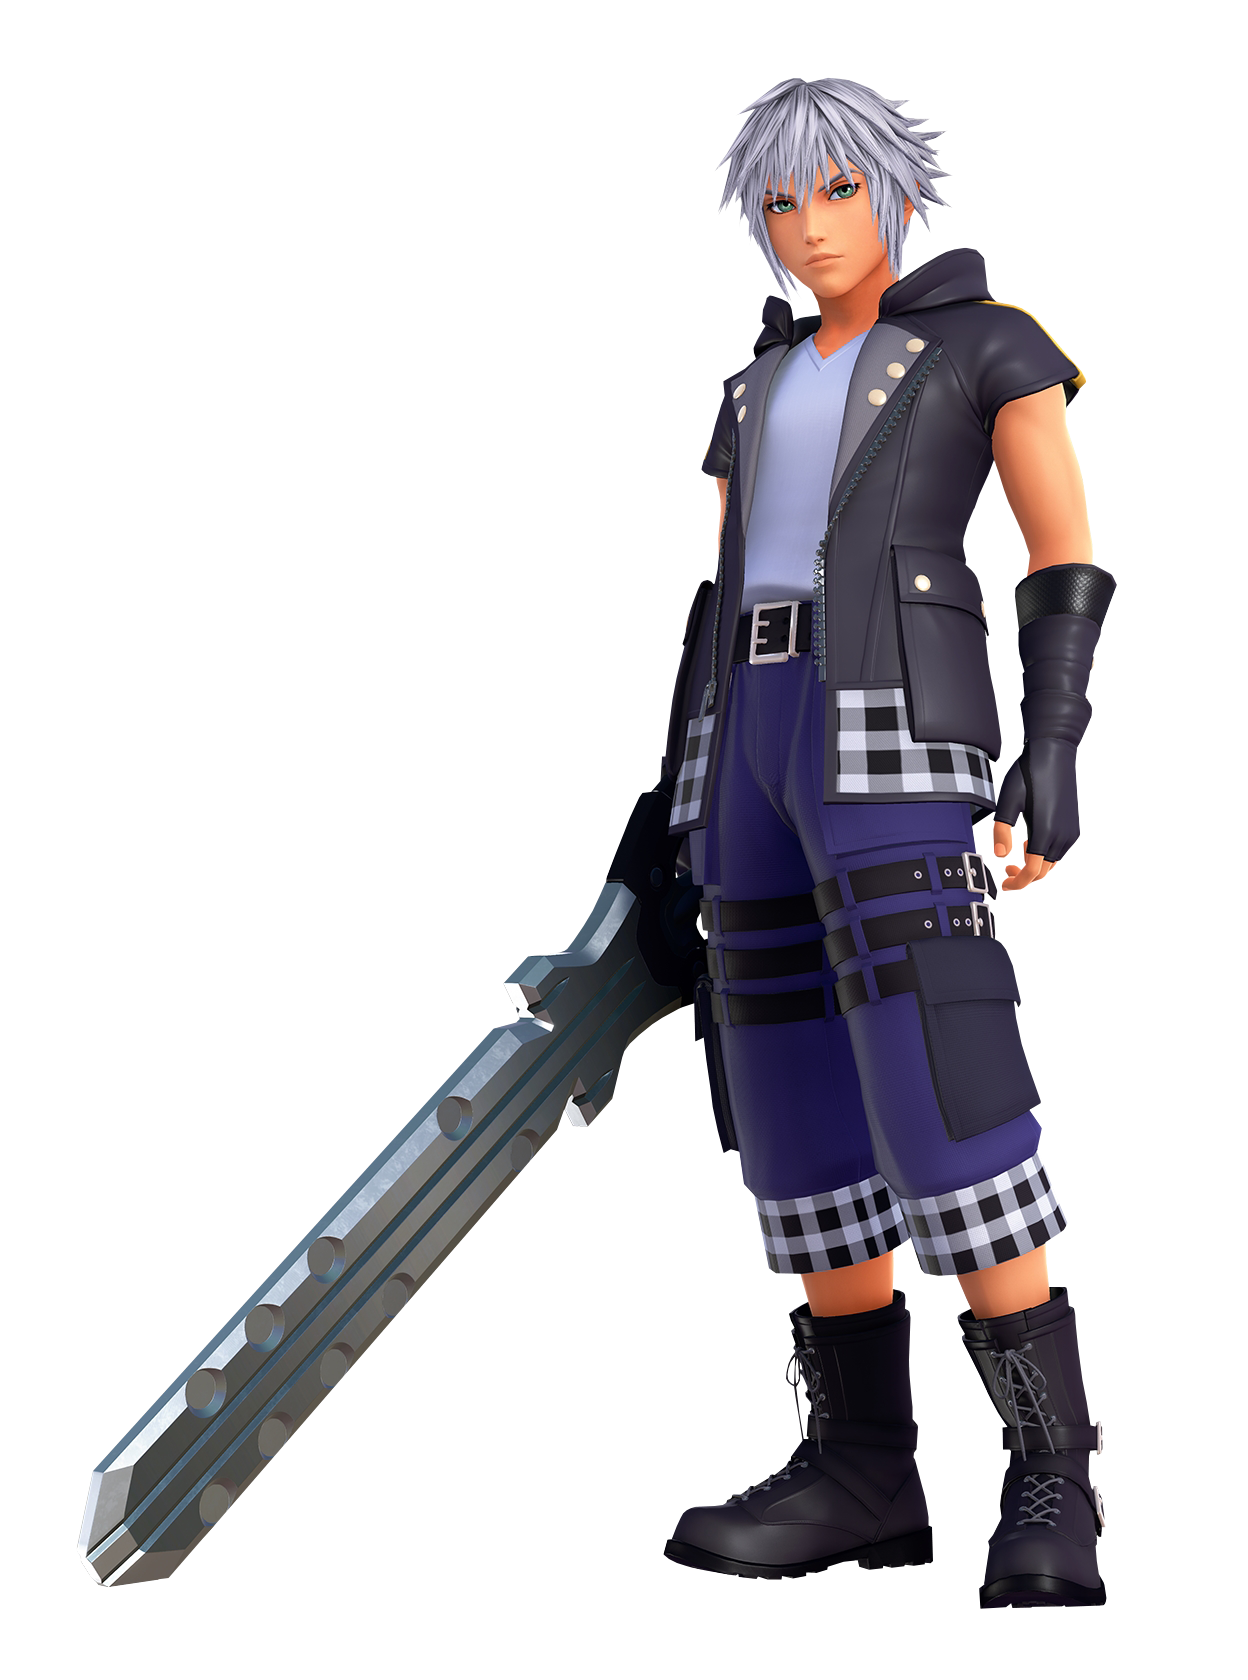 Riku Kingdom Hearts